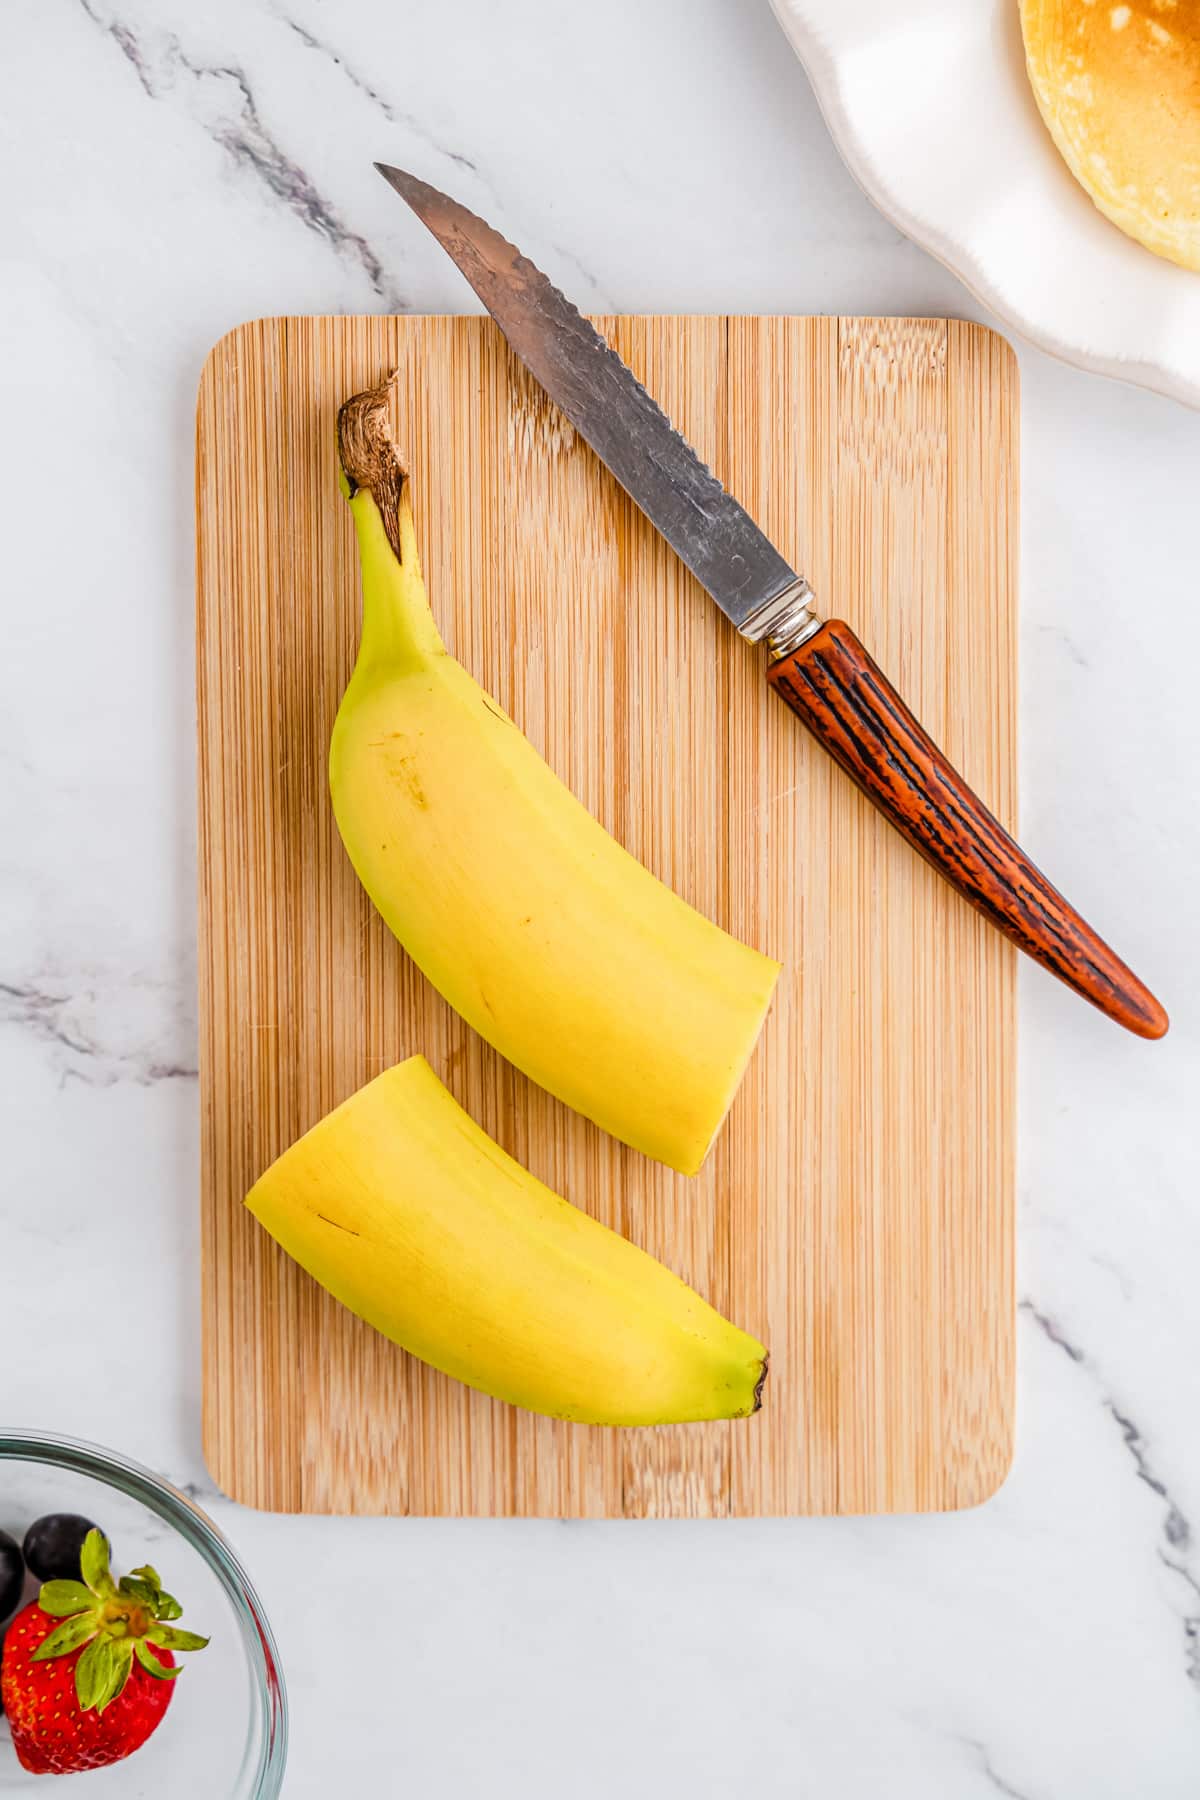 cut banana in half